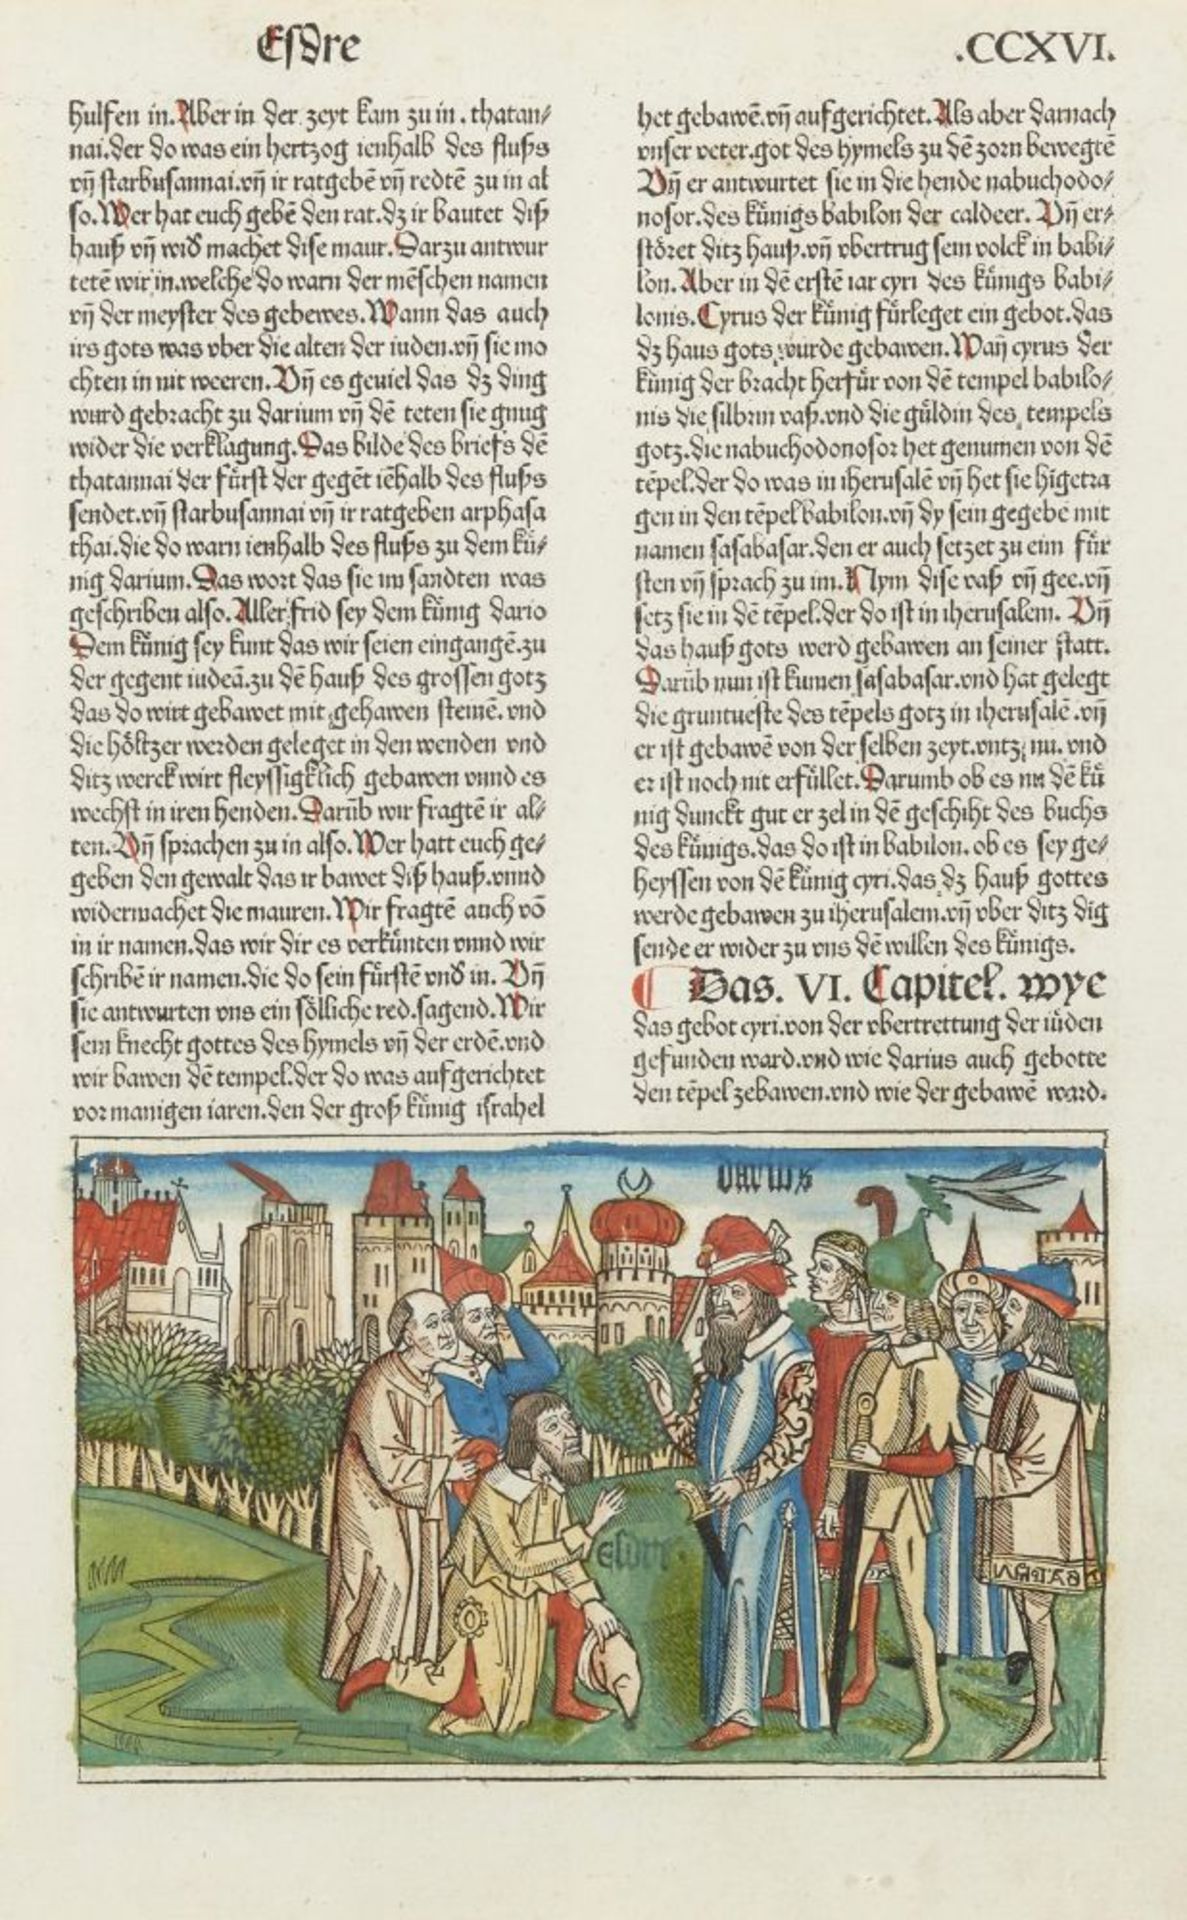 Köln.- Ansicht von Köln aus der 9. dt. Bibel. 1483. Kolor. Holzschnitt.